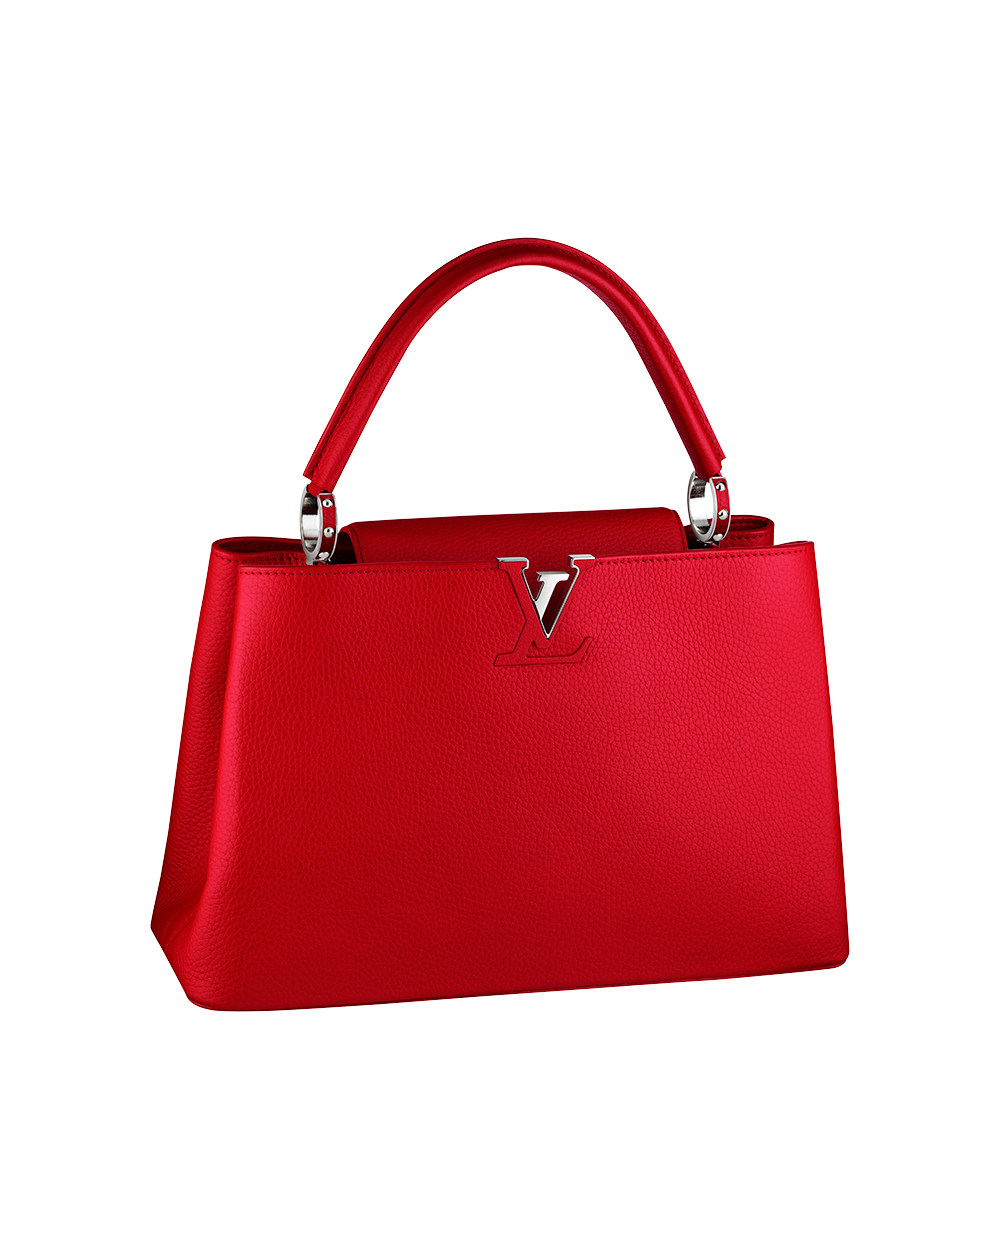  Louis Vuitton bag, $8550